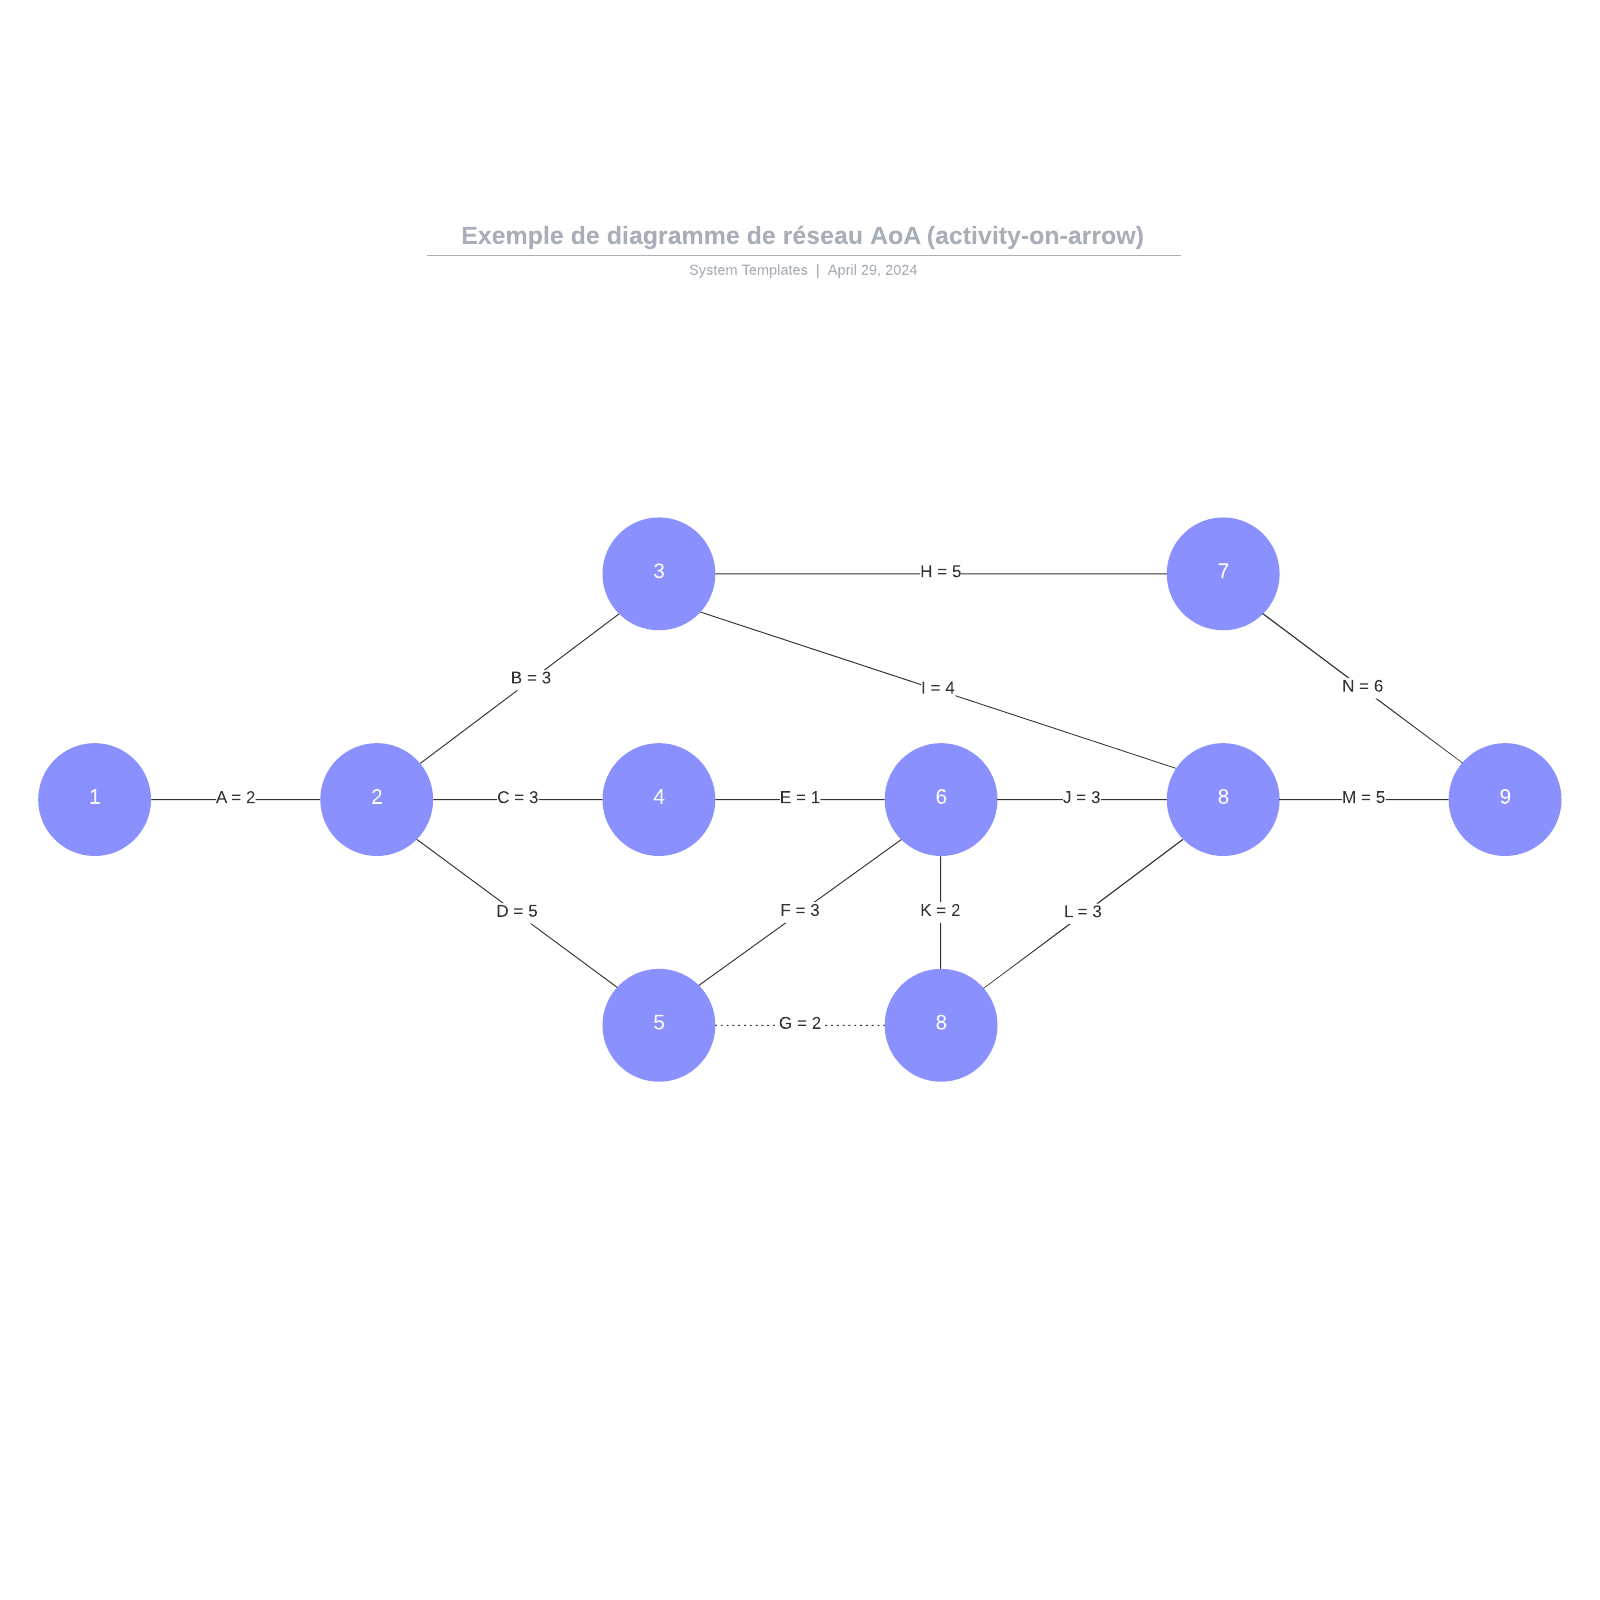 exemple de diagramme de réseau AoA (activity-on-arrow) vierge